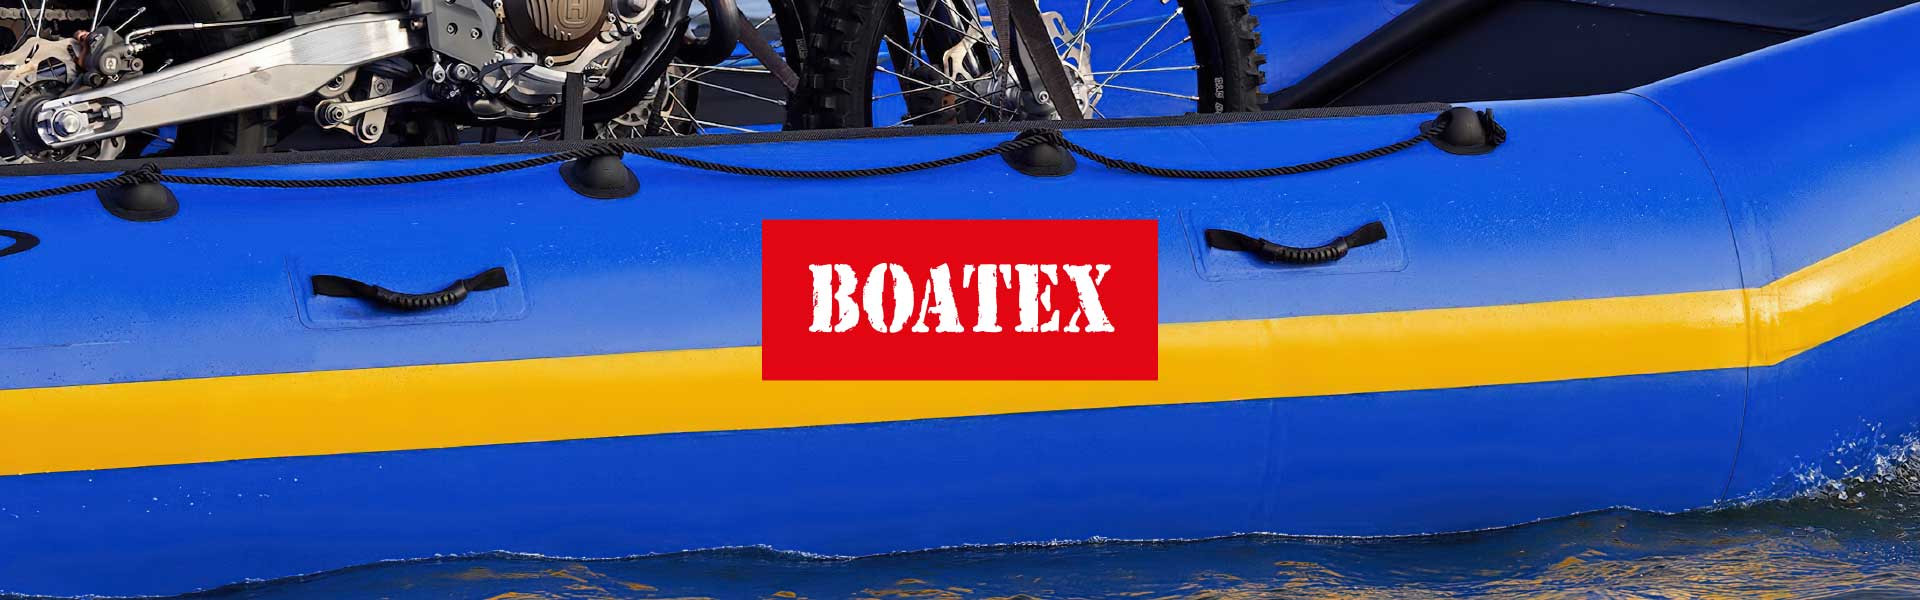 BOATEX 1100 кг/м.кв синего цвета – 7,12 $ за м.кв